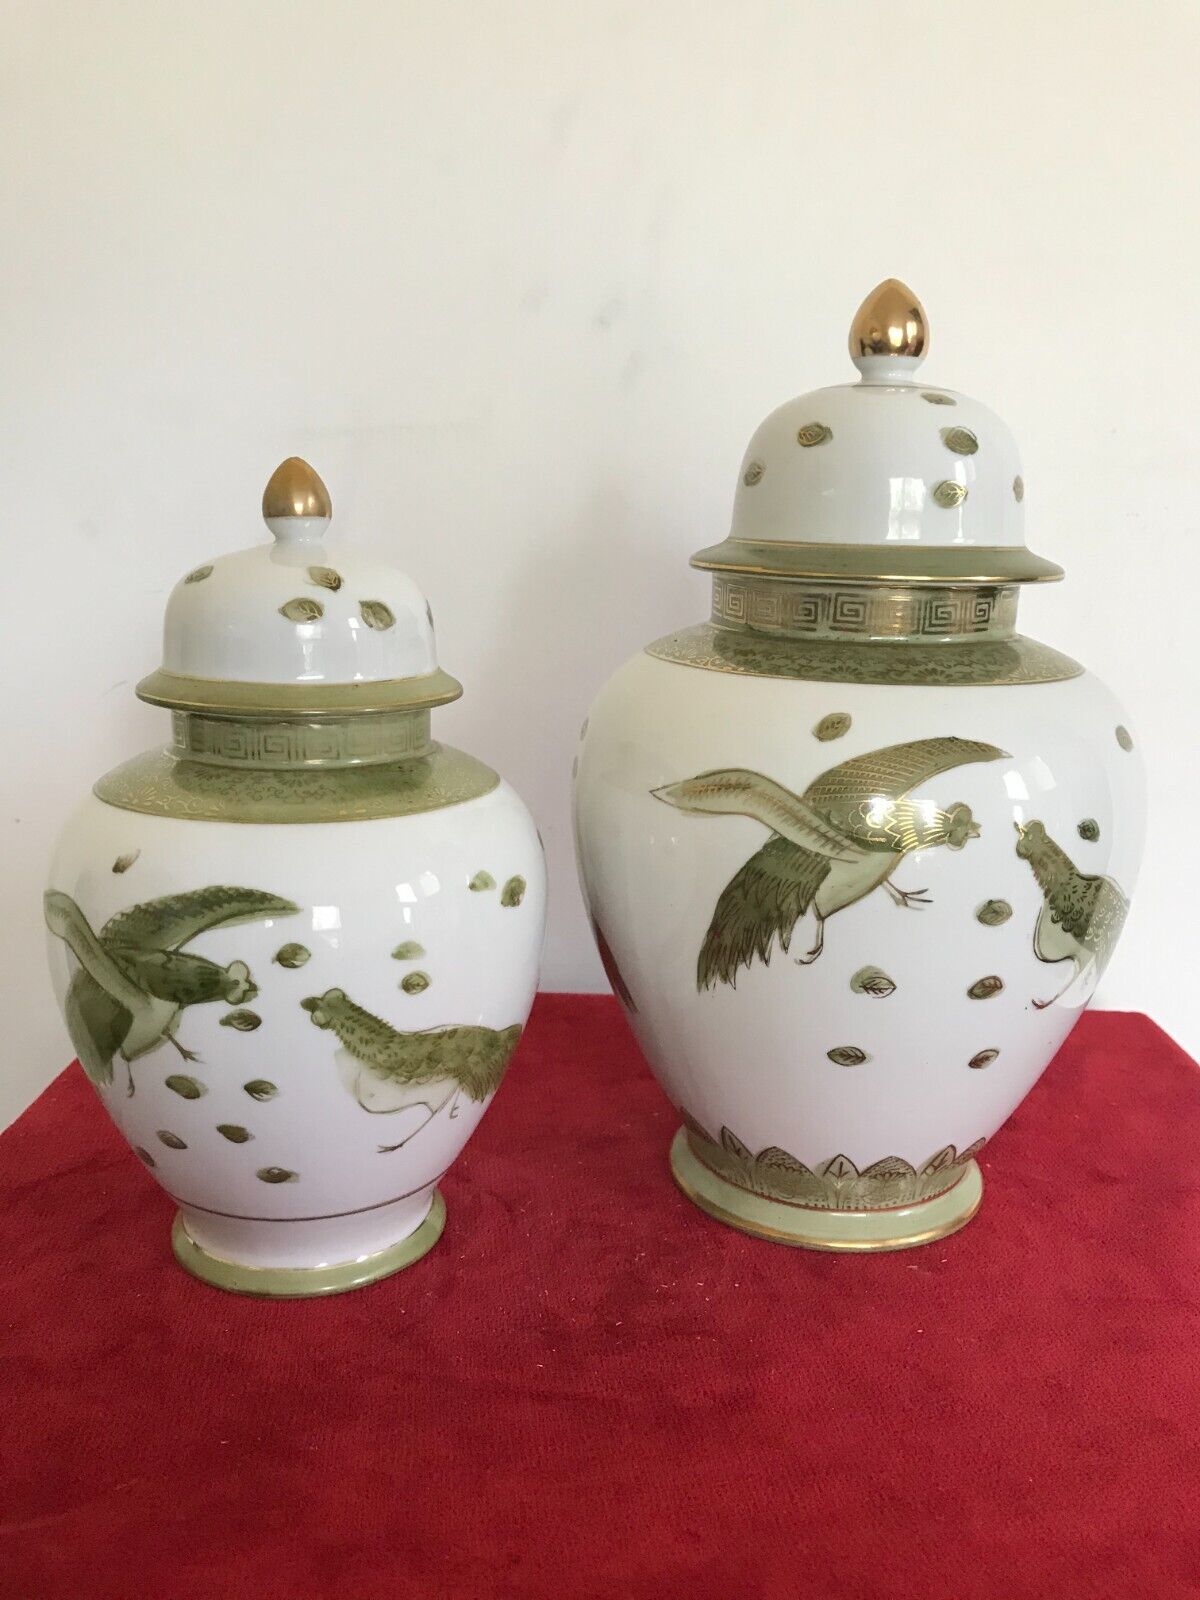 Two ventage porcelain jars made in Japan